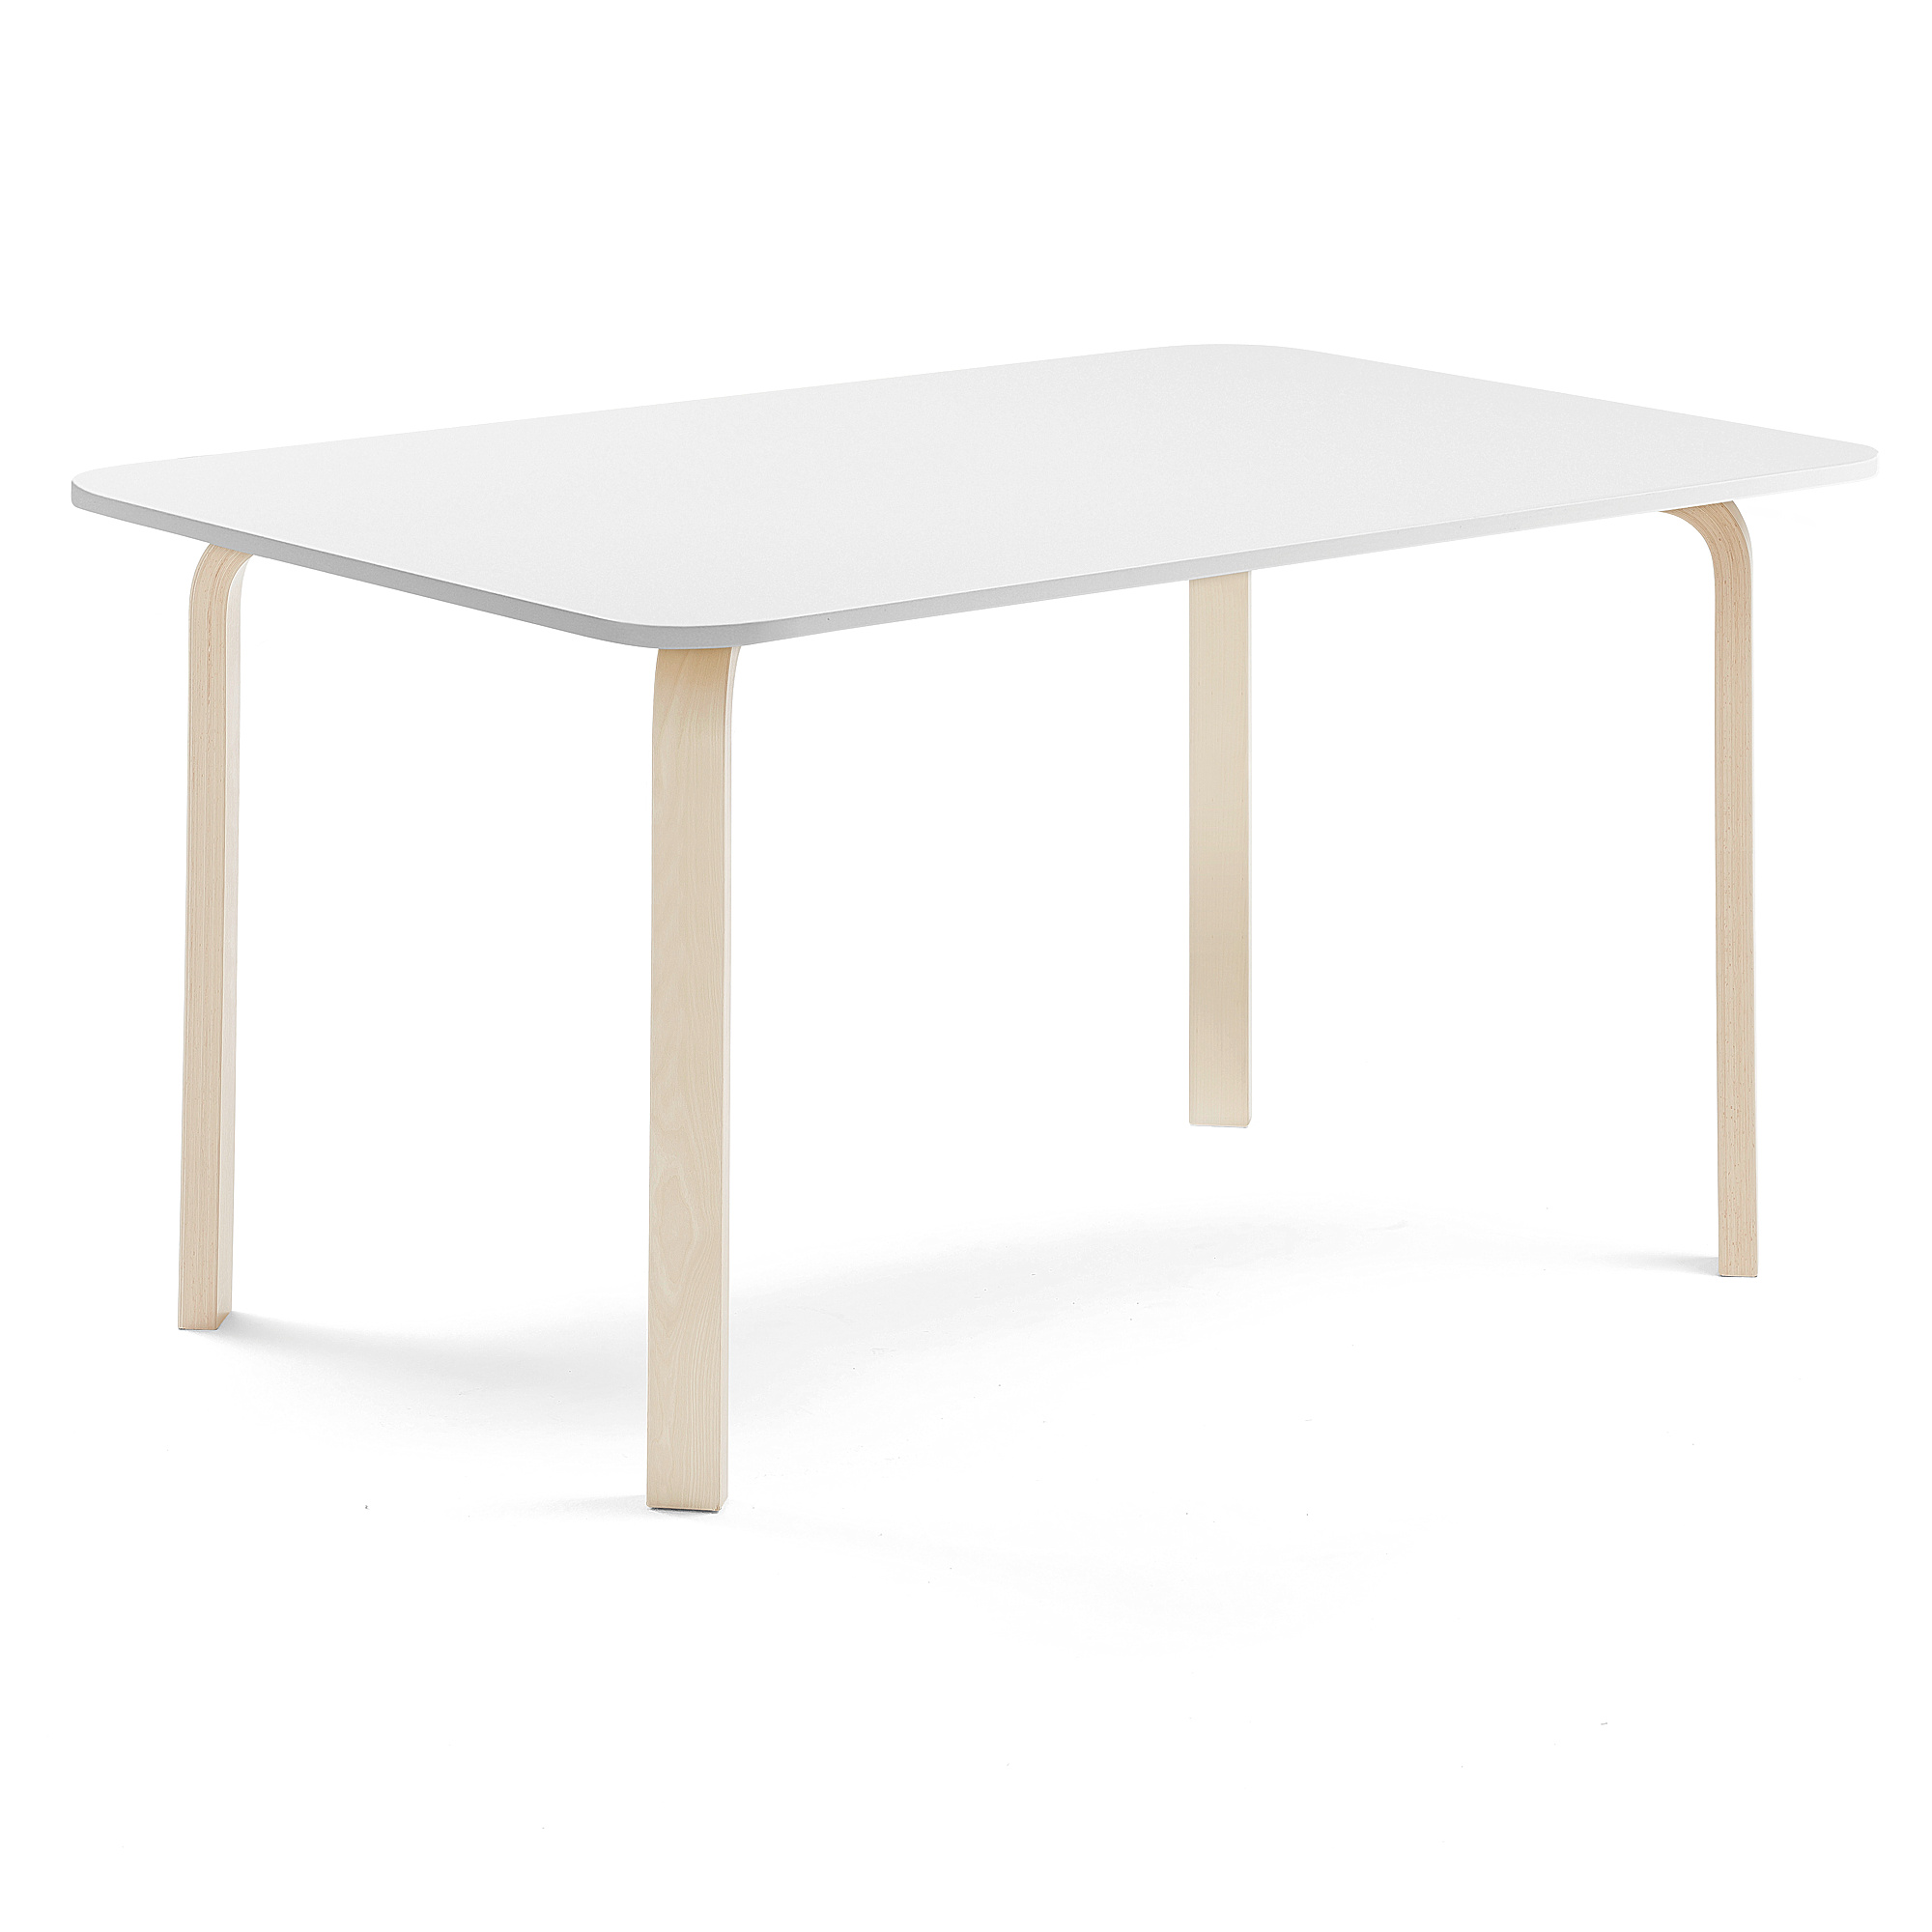 Stůl ELTON, 1800x800x710 mm, bříza, akustická HPL deska, bílá